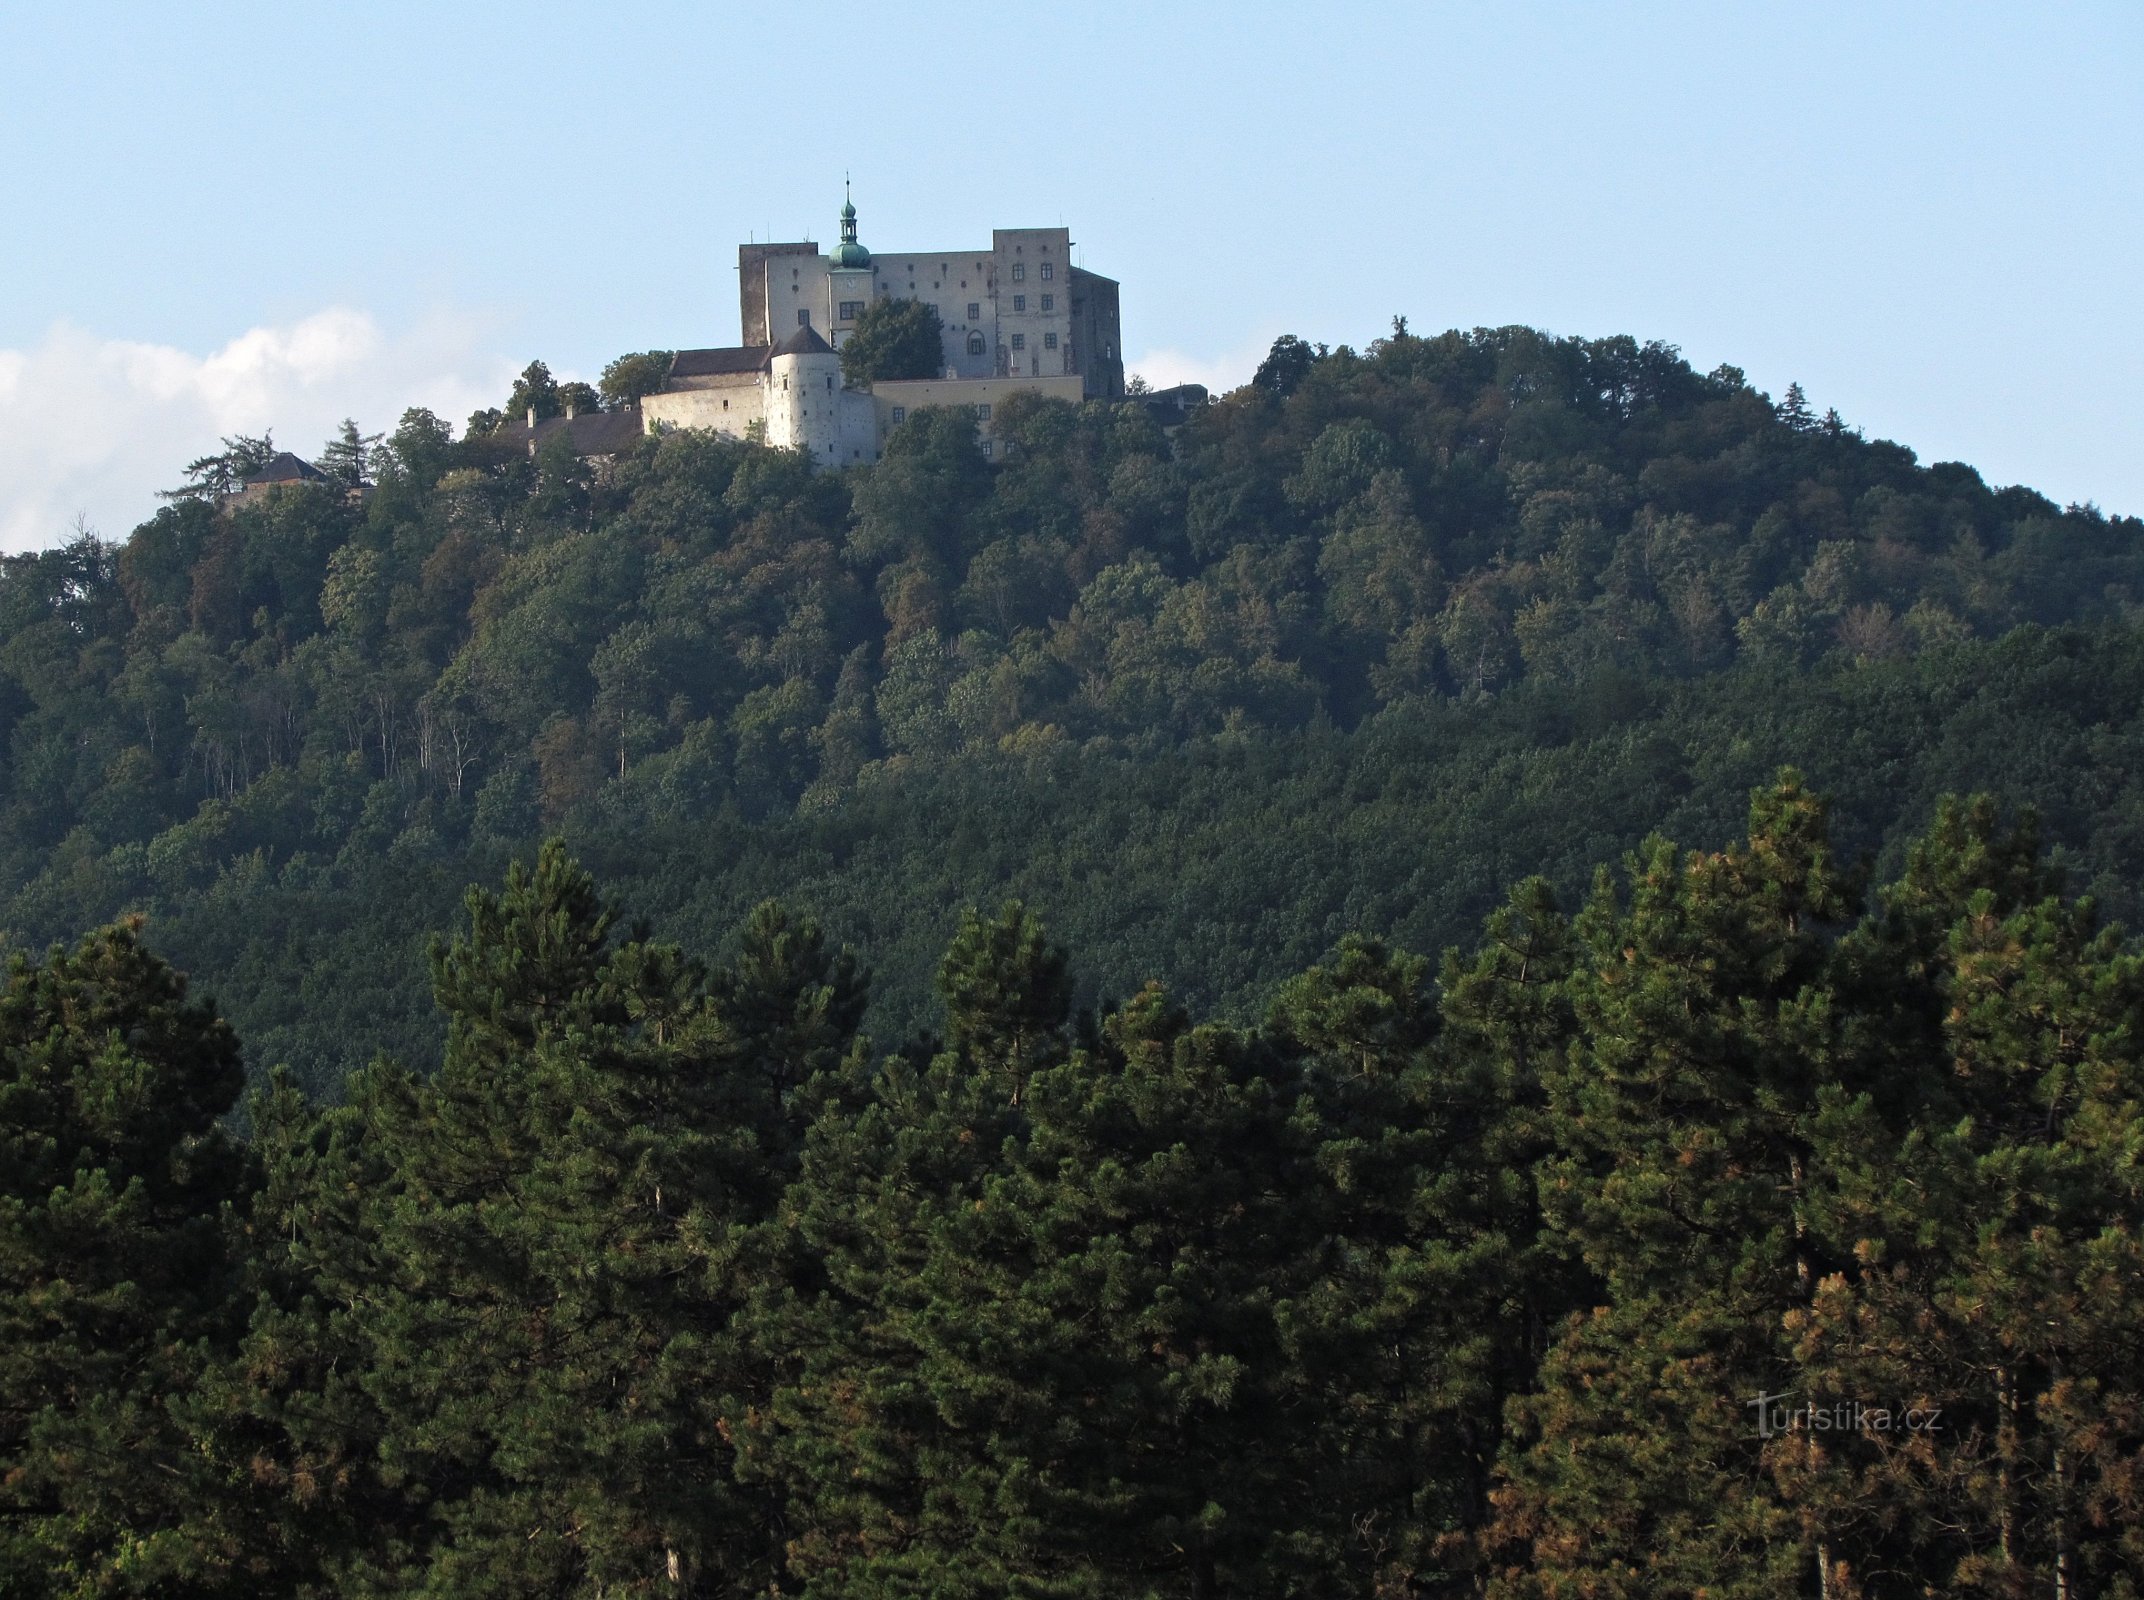 O králi slováckých hradů, o Buchlovu